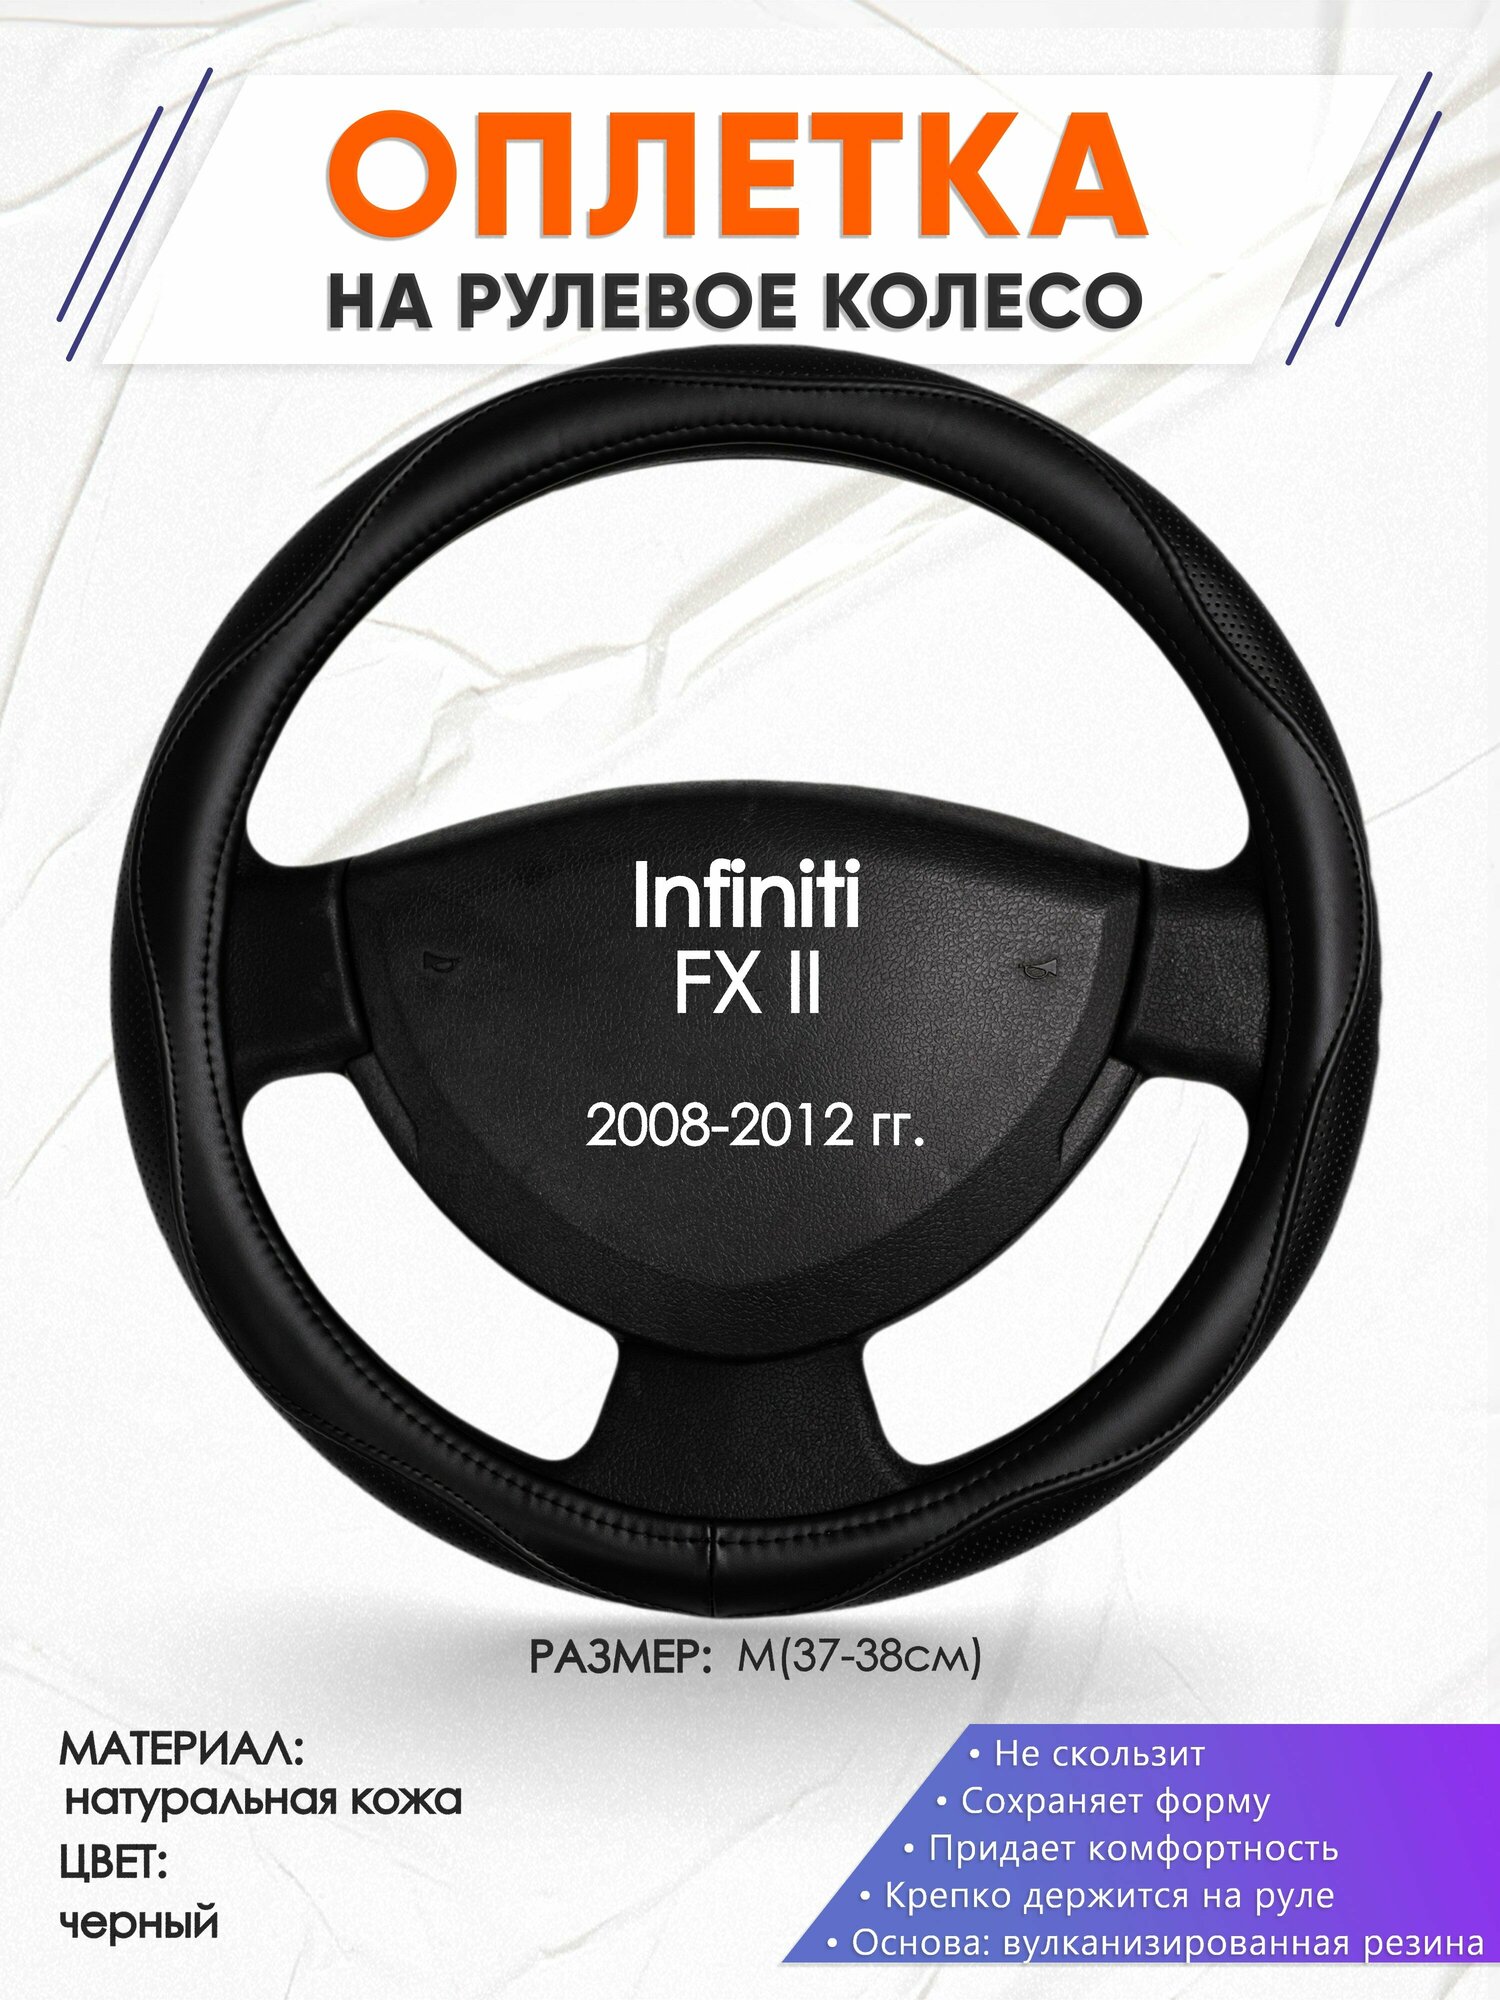 Оплетка наруль для Infiniti FX II(Инфинити ФХ 2) 2008-2012 годов выпуска, размер M(37-38см), Натуральная кожа 31